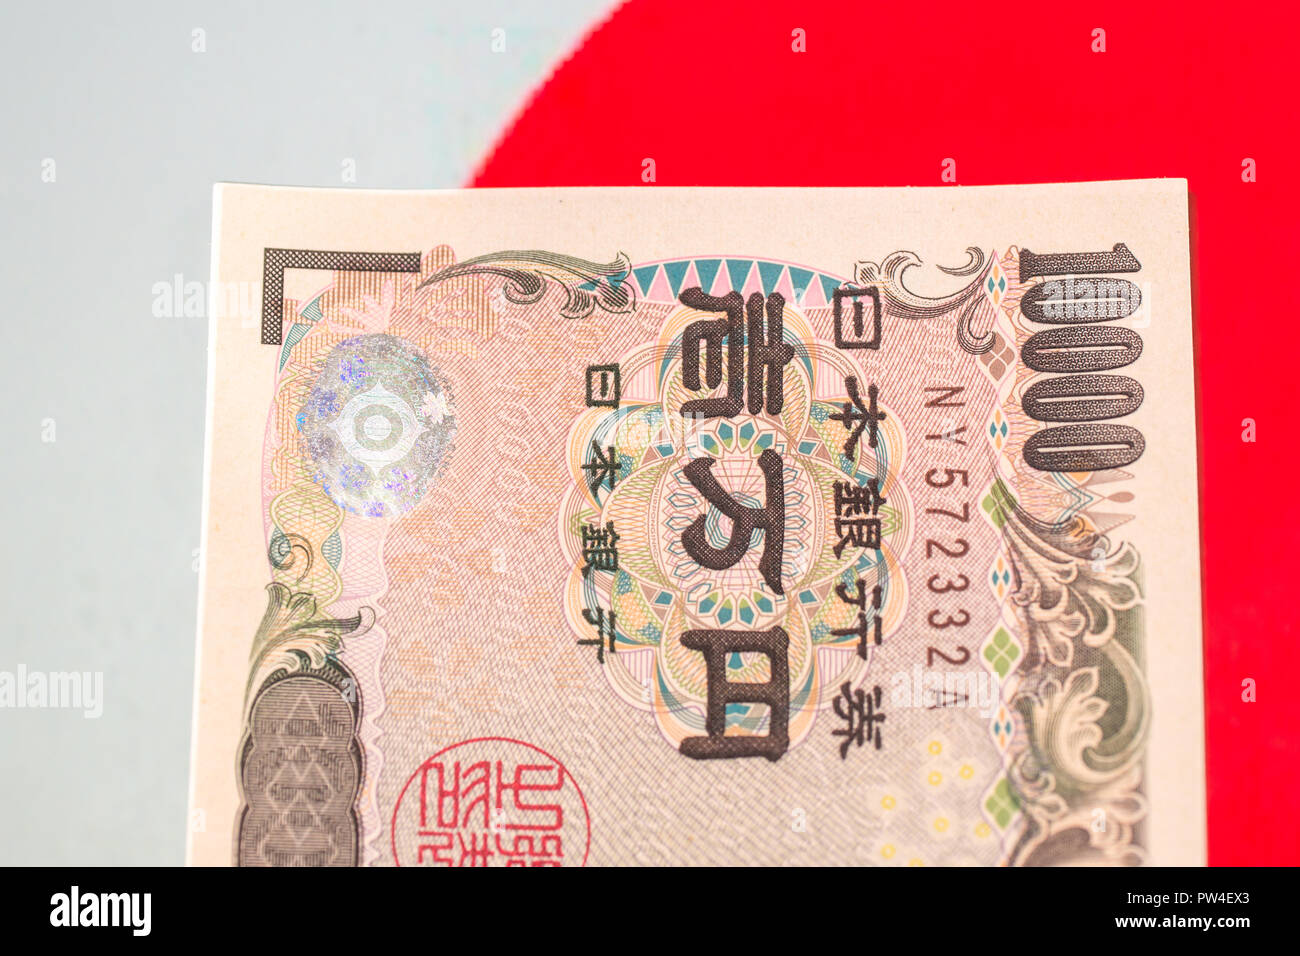 Billets de monnaie japonaise , Yen japonais sur le drapeau japonais. Banque D'Images